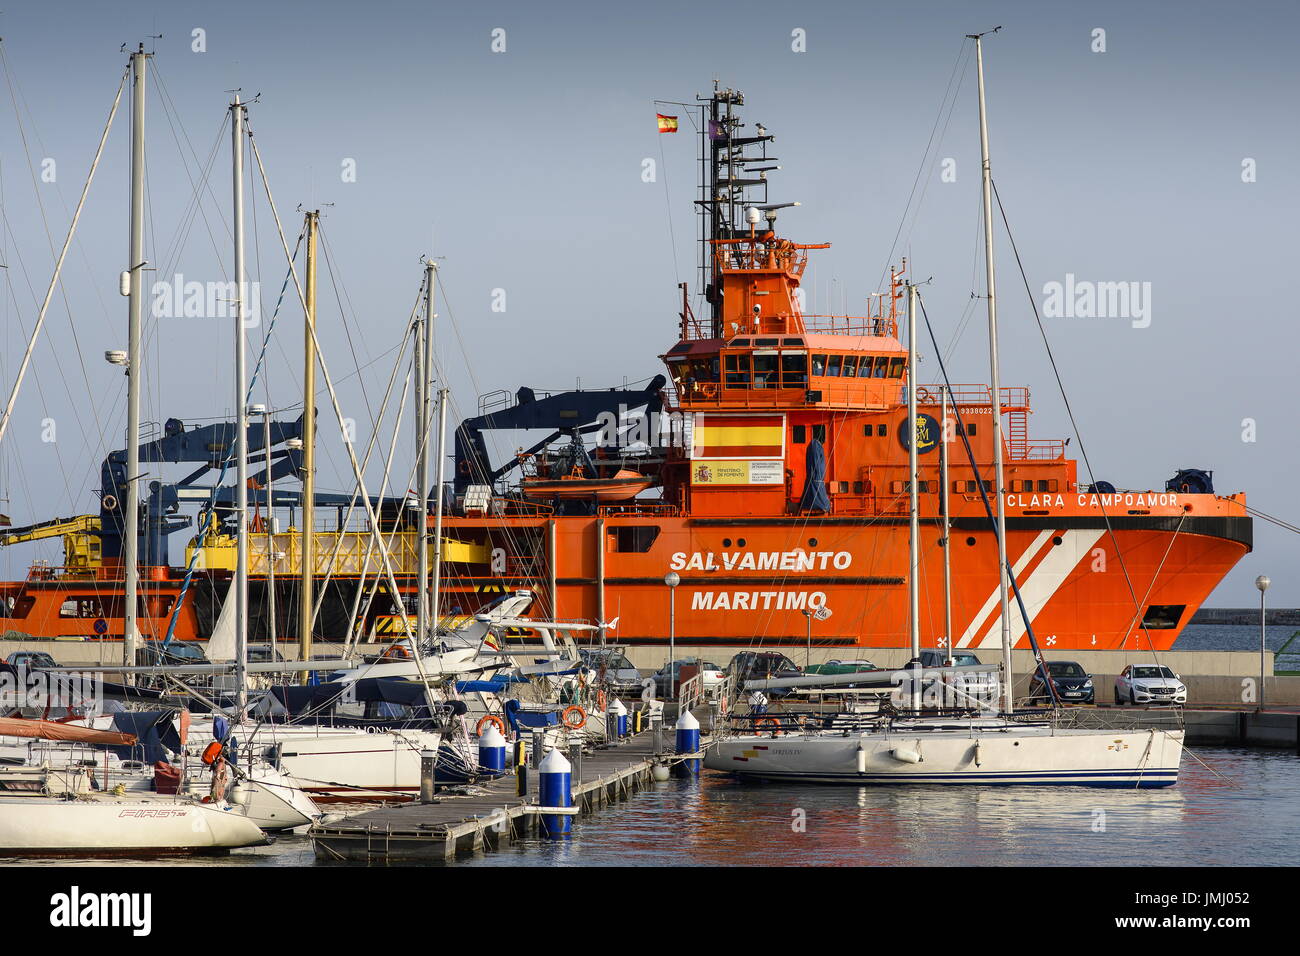 Cartagena, Murcia, Spanien.  Maritime Rescue Boot im Hafen von Cartagena. Dieses Boot widmet sich um Schiffswracks im Mittelmeer zu retten. Stockfoto